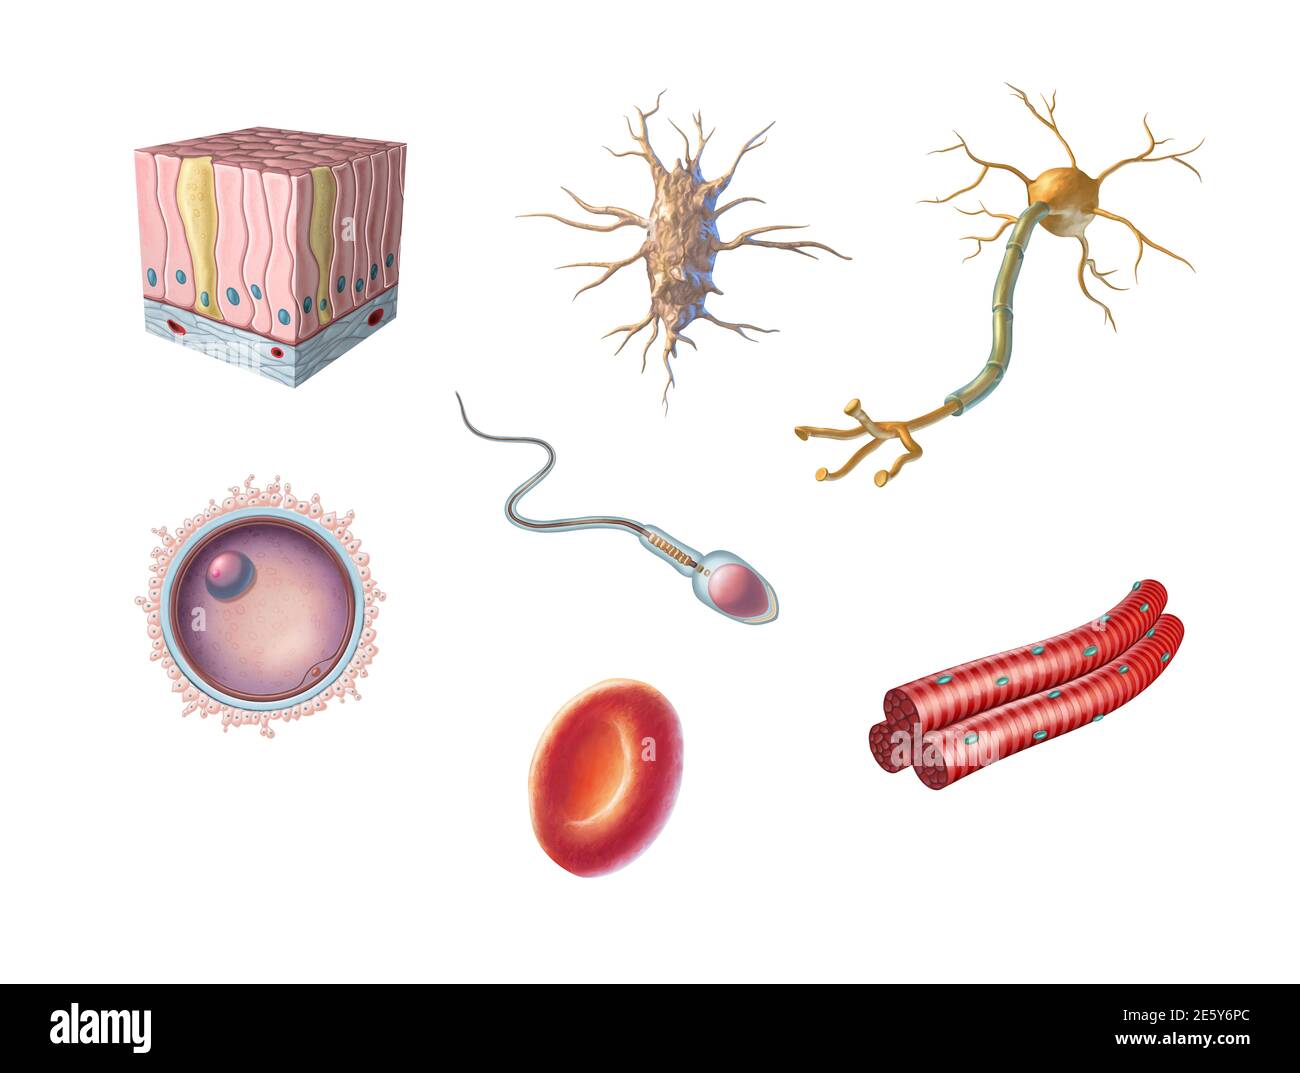 Différents types de cellules humaines, y compris un ovule, un sperme, une globule rouge, un ostéocyte, un neurone, un muscle squelettique et une cellule épithéliale columnaire. Numérique Banque D'Images